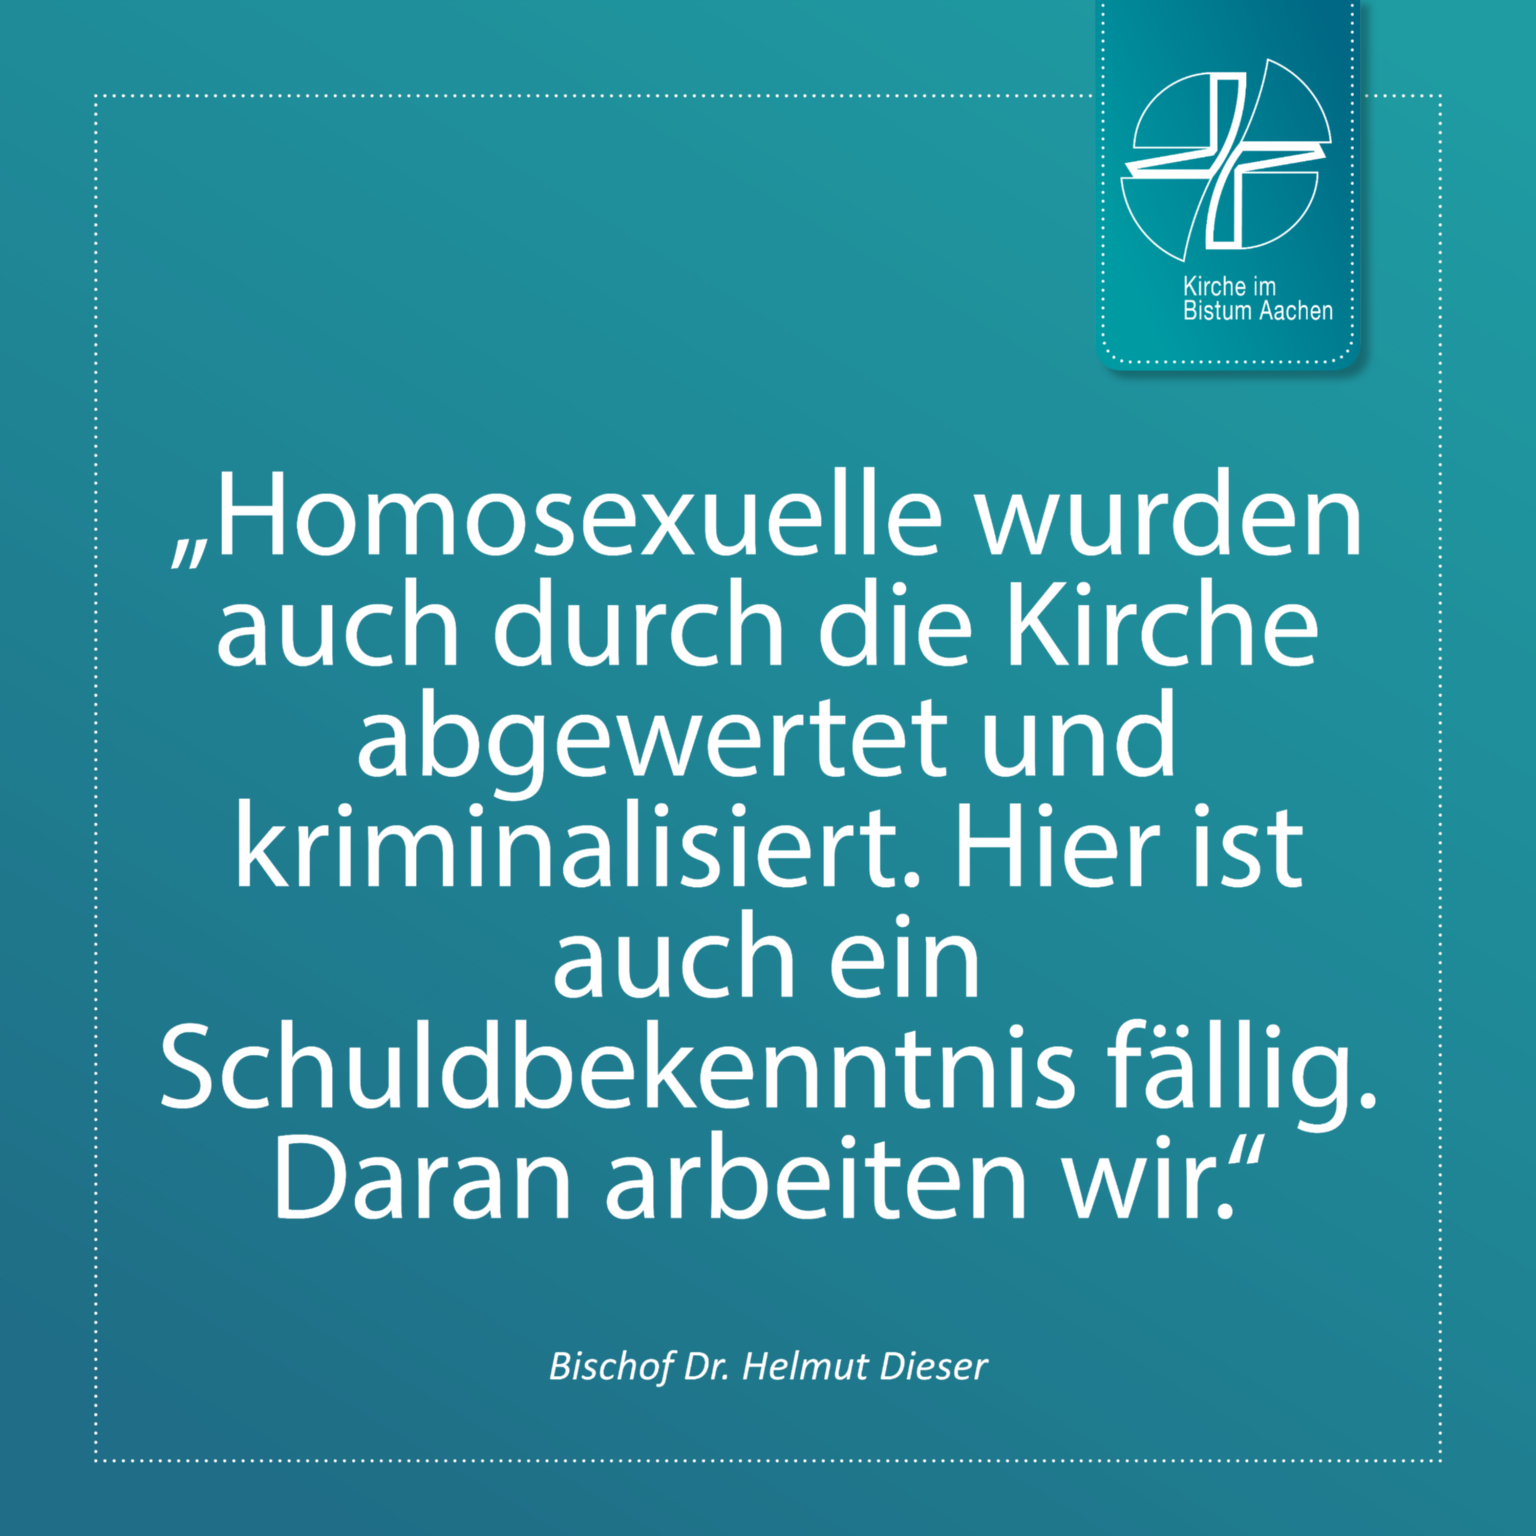 Bischof Dr. Helmut Dieser - Zitat 11 (c) Bistum Aachen